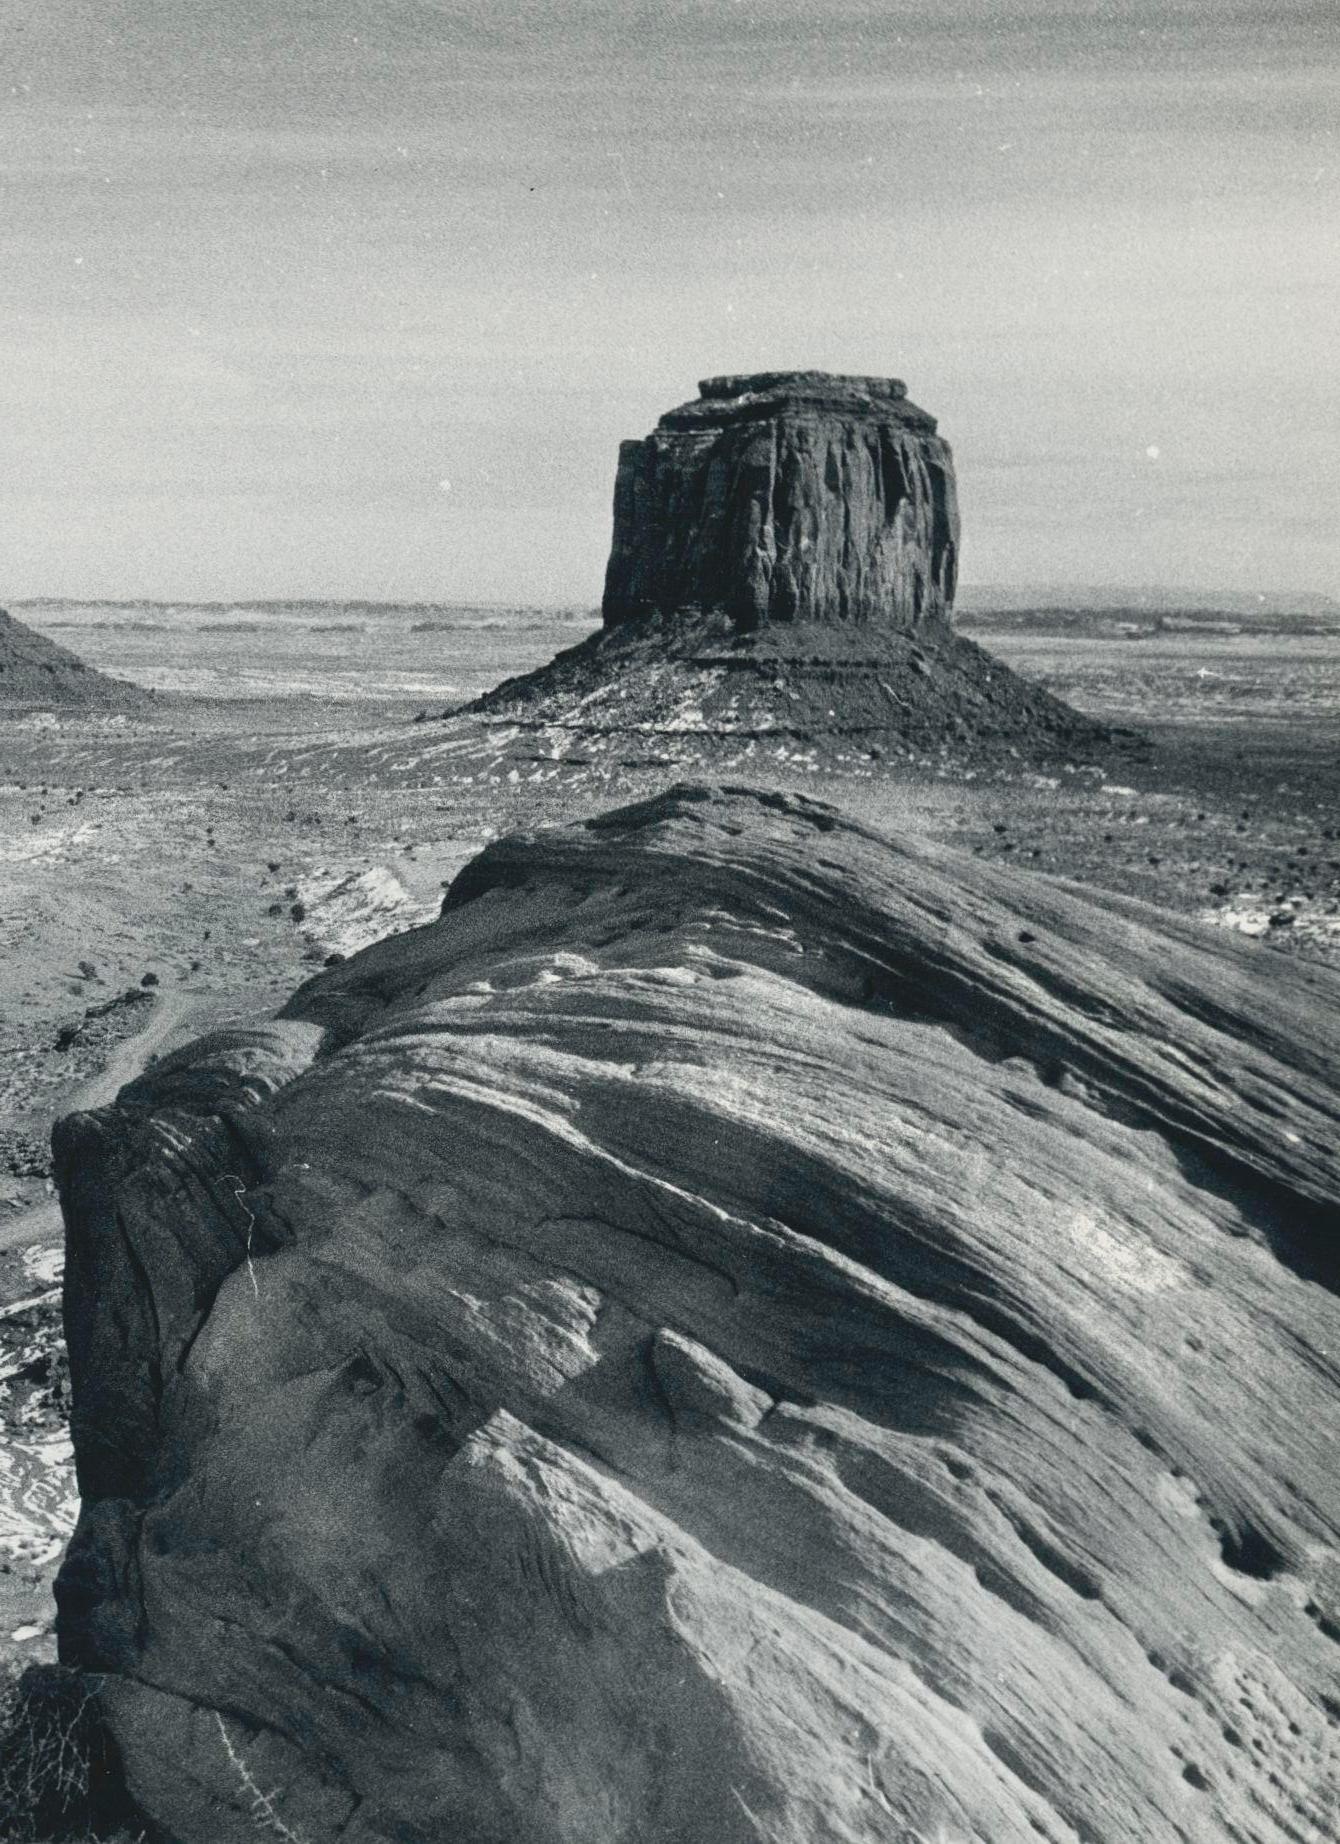 Monument Valley, Utah/Arizona, noir et blanc, États-Unis, 23 x 16,8 cm - Photograph de Erich Andres